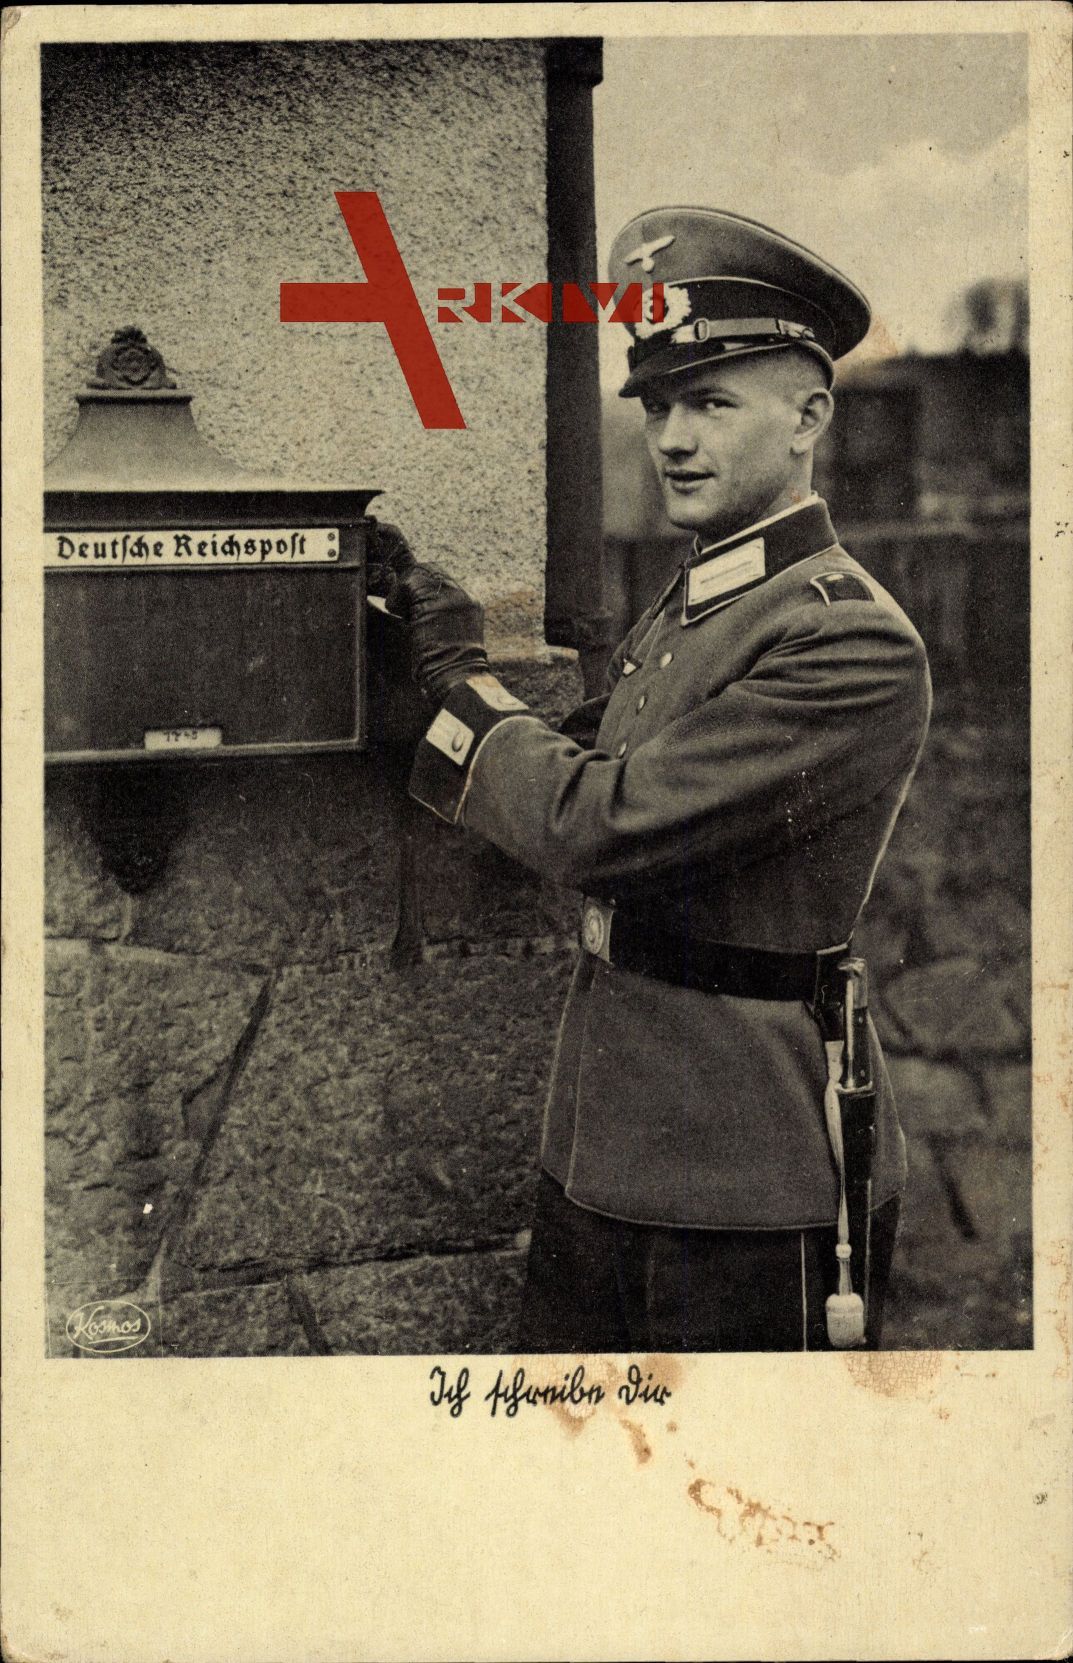 Wehrmachtsoldat am Briefkasten, Deutsche Reichspost, Uniform, Messer